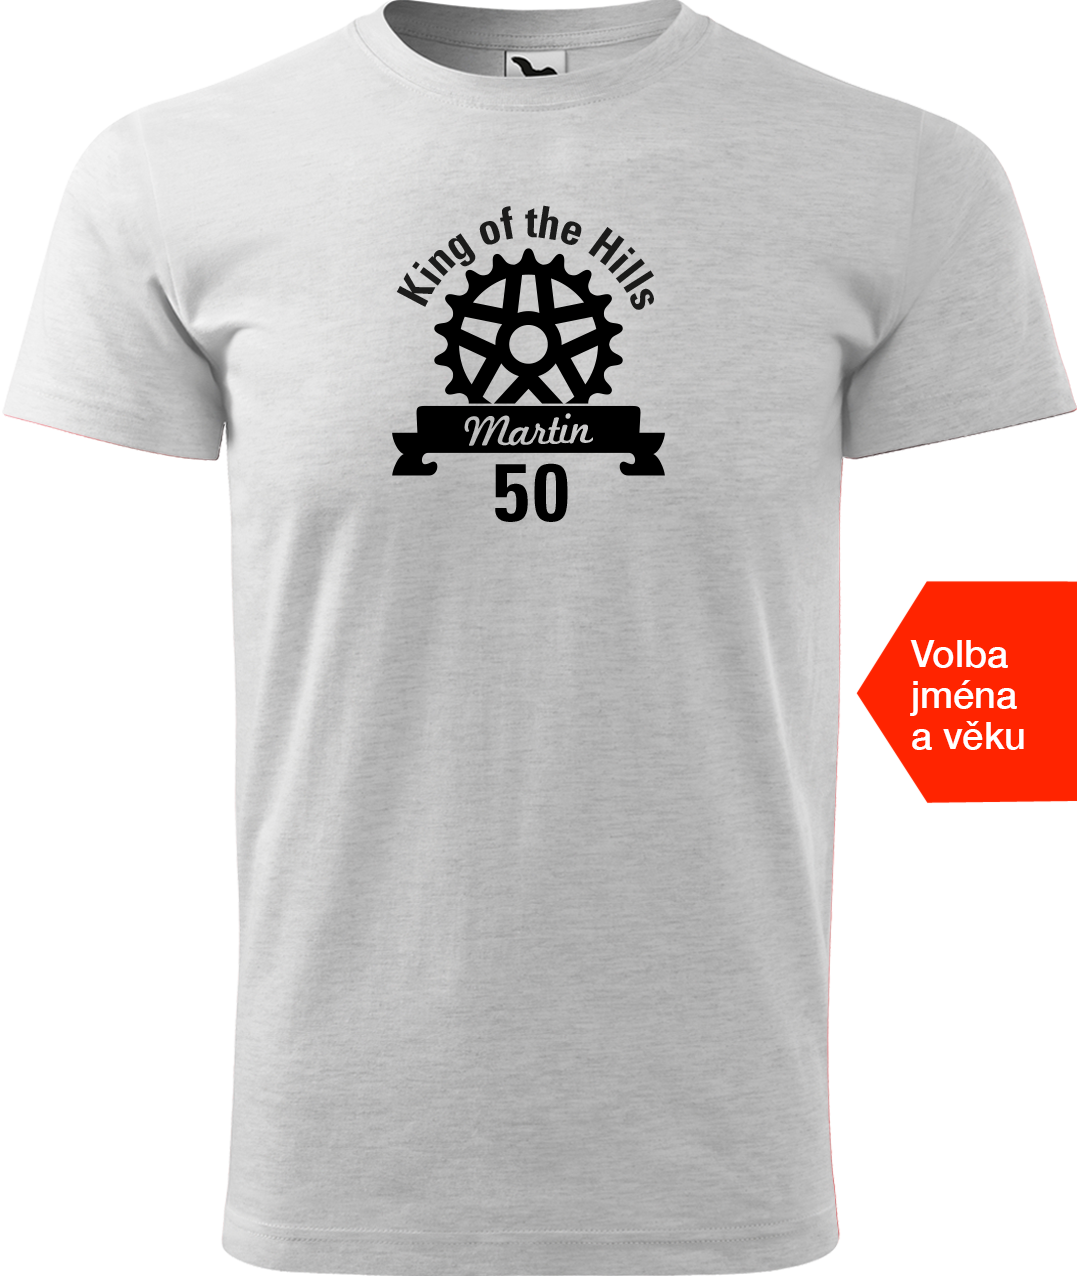 Pánské tričko pro cyklistu se jménem - King of the Hills Velikost: L, Barva: Světle šedý melír (03)